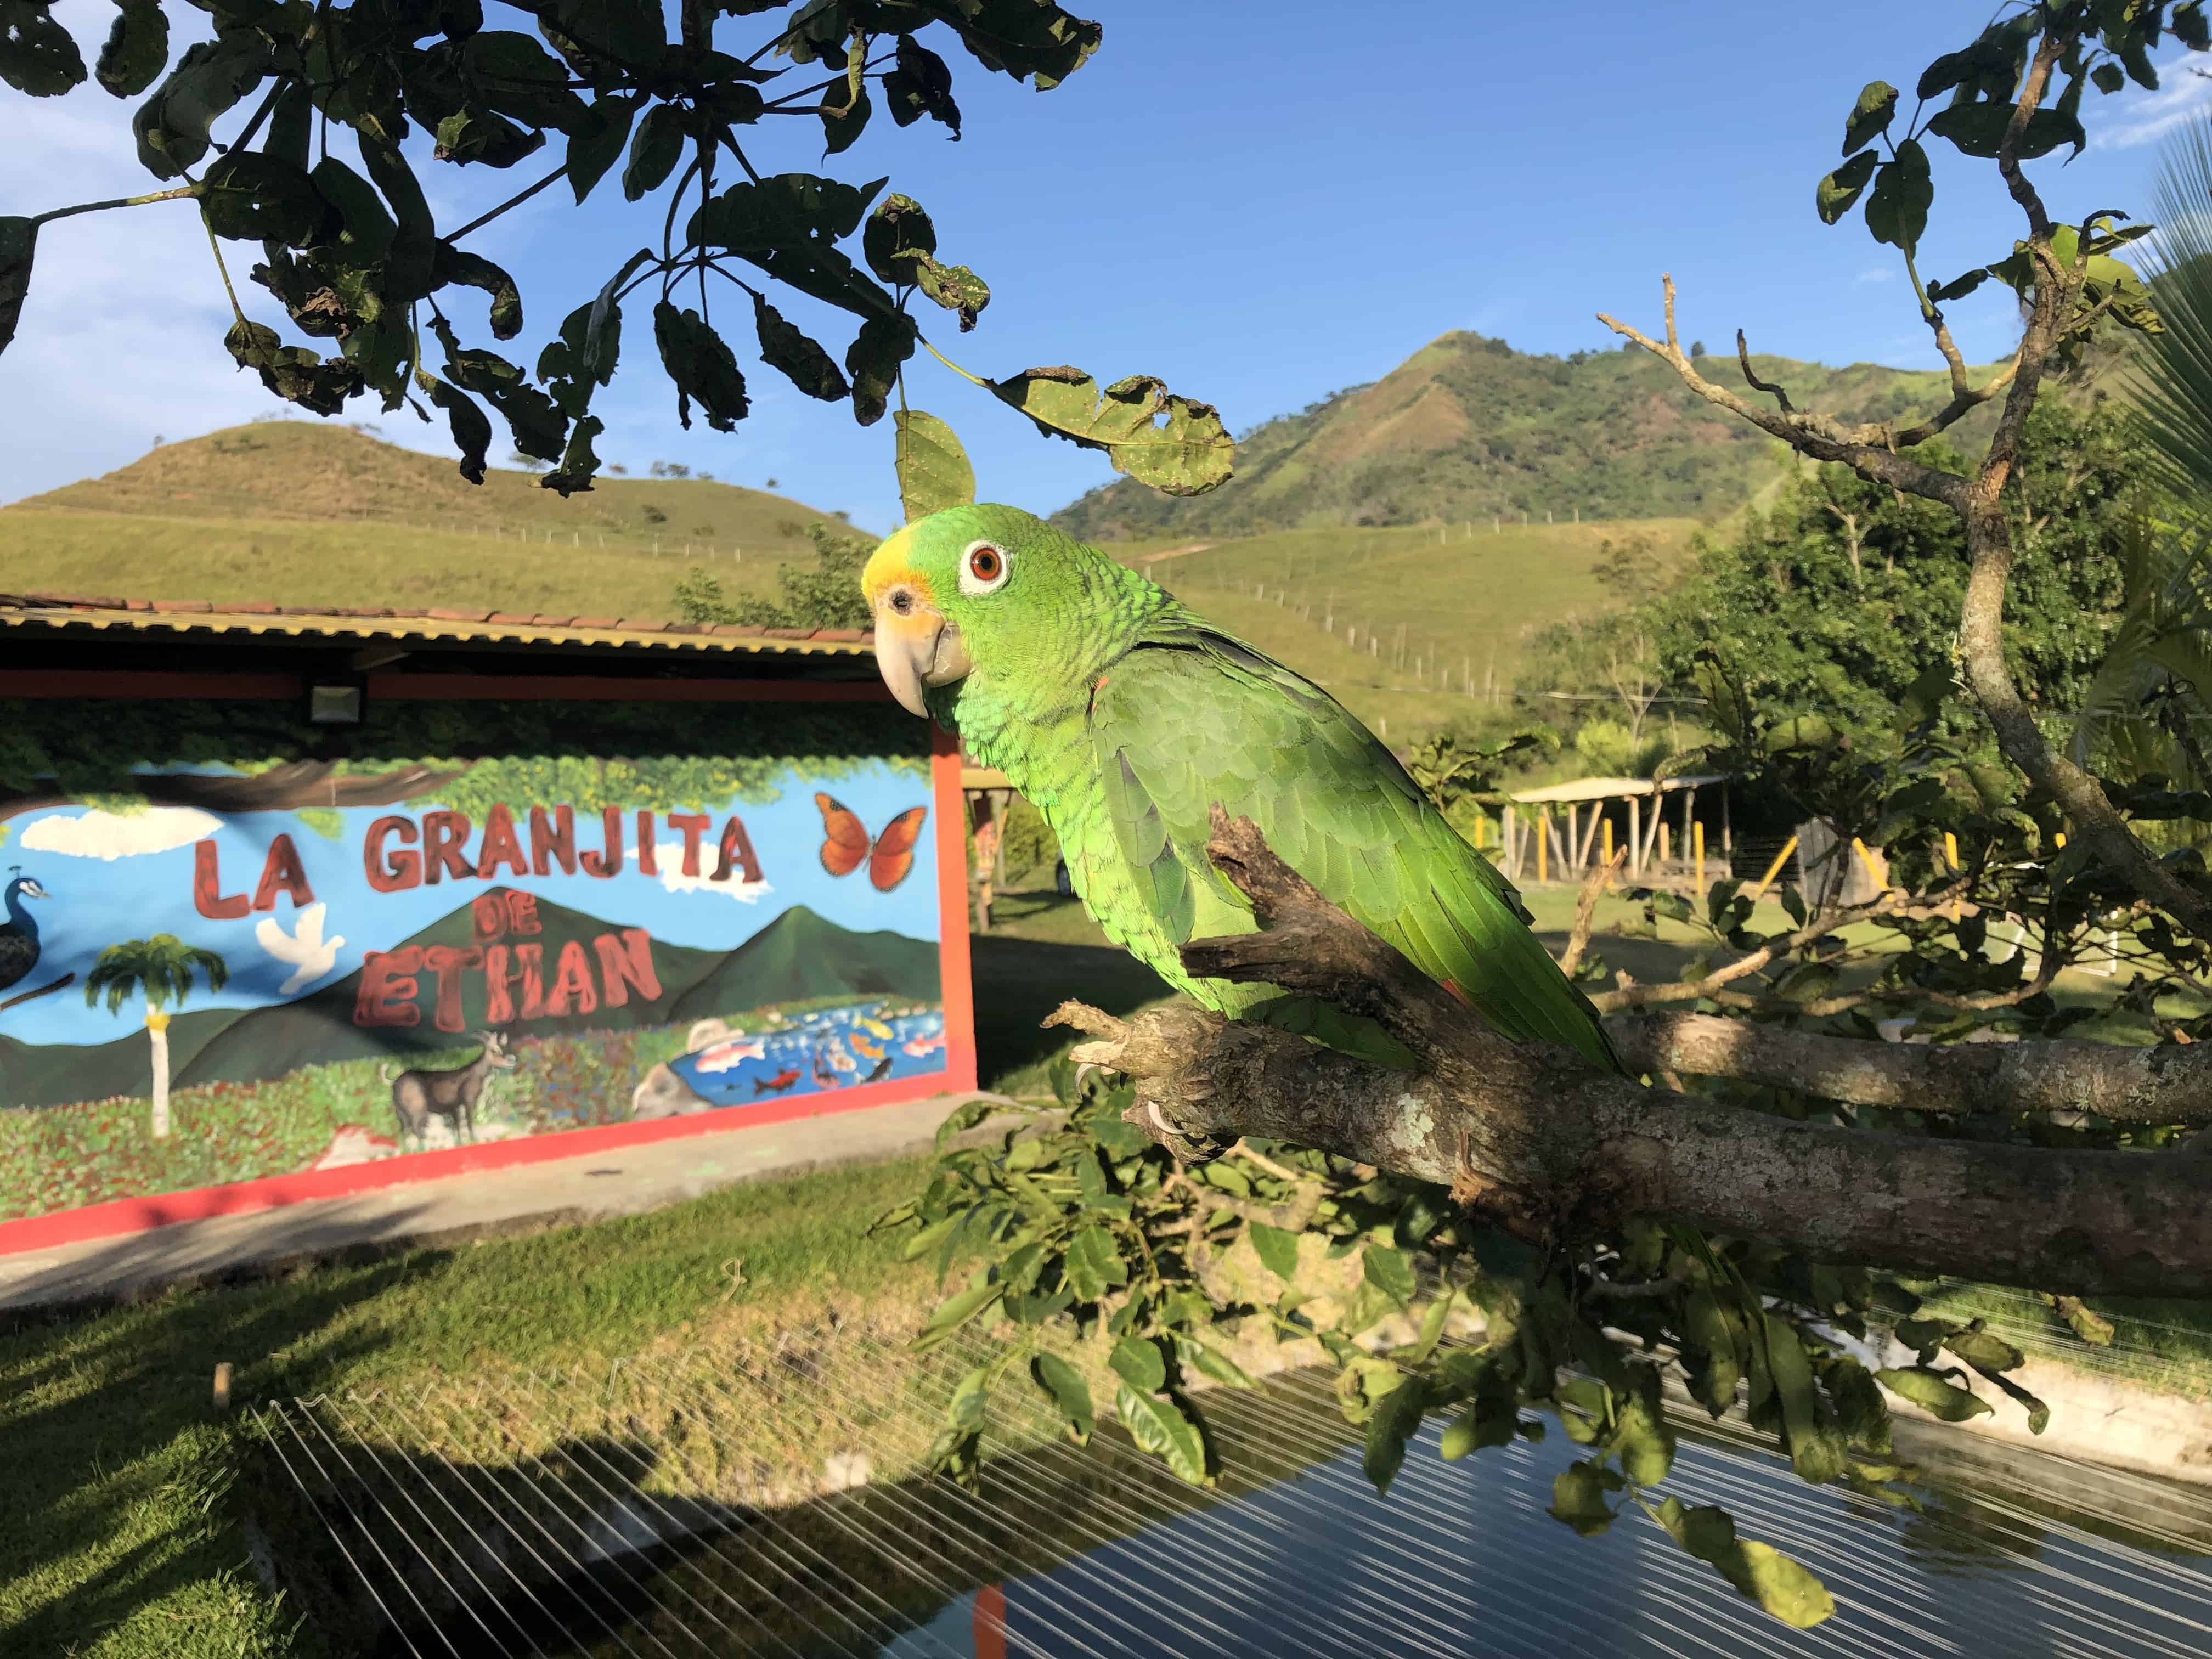 La Granjita de Ethan in Umbría, Belén de Umbría, Risaralda, Colombia